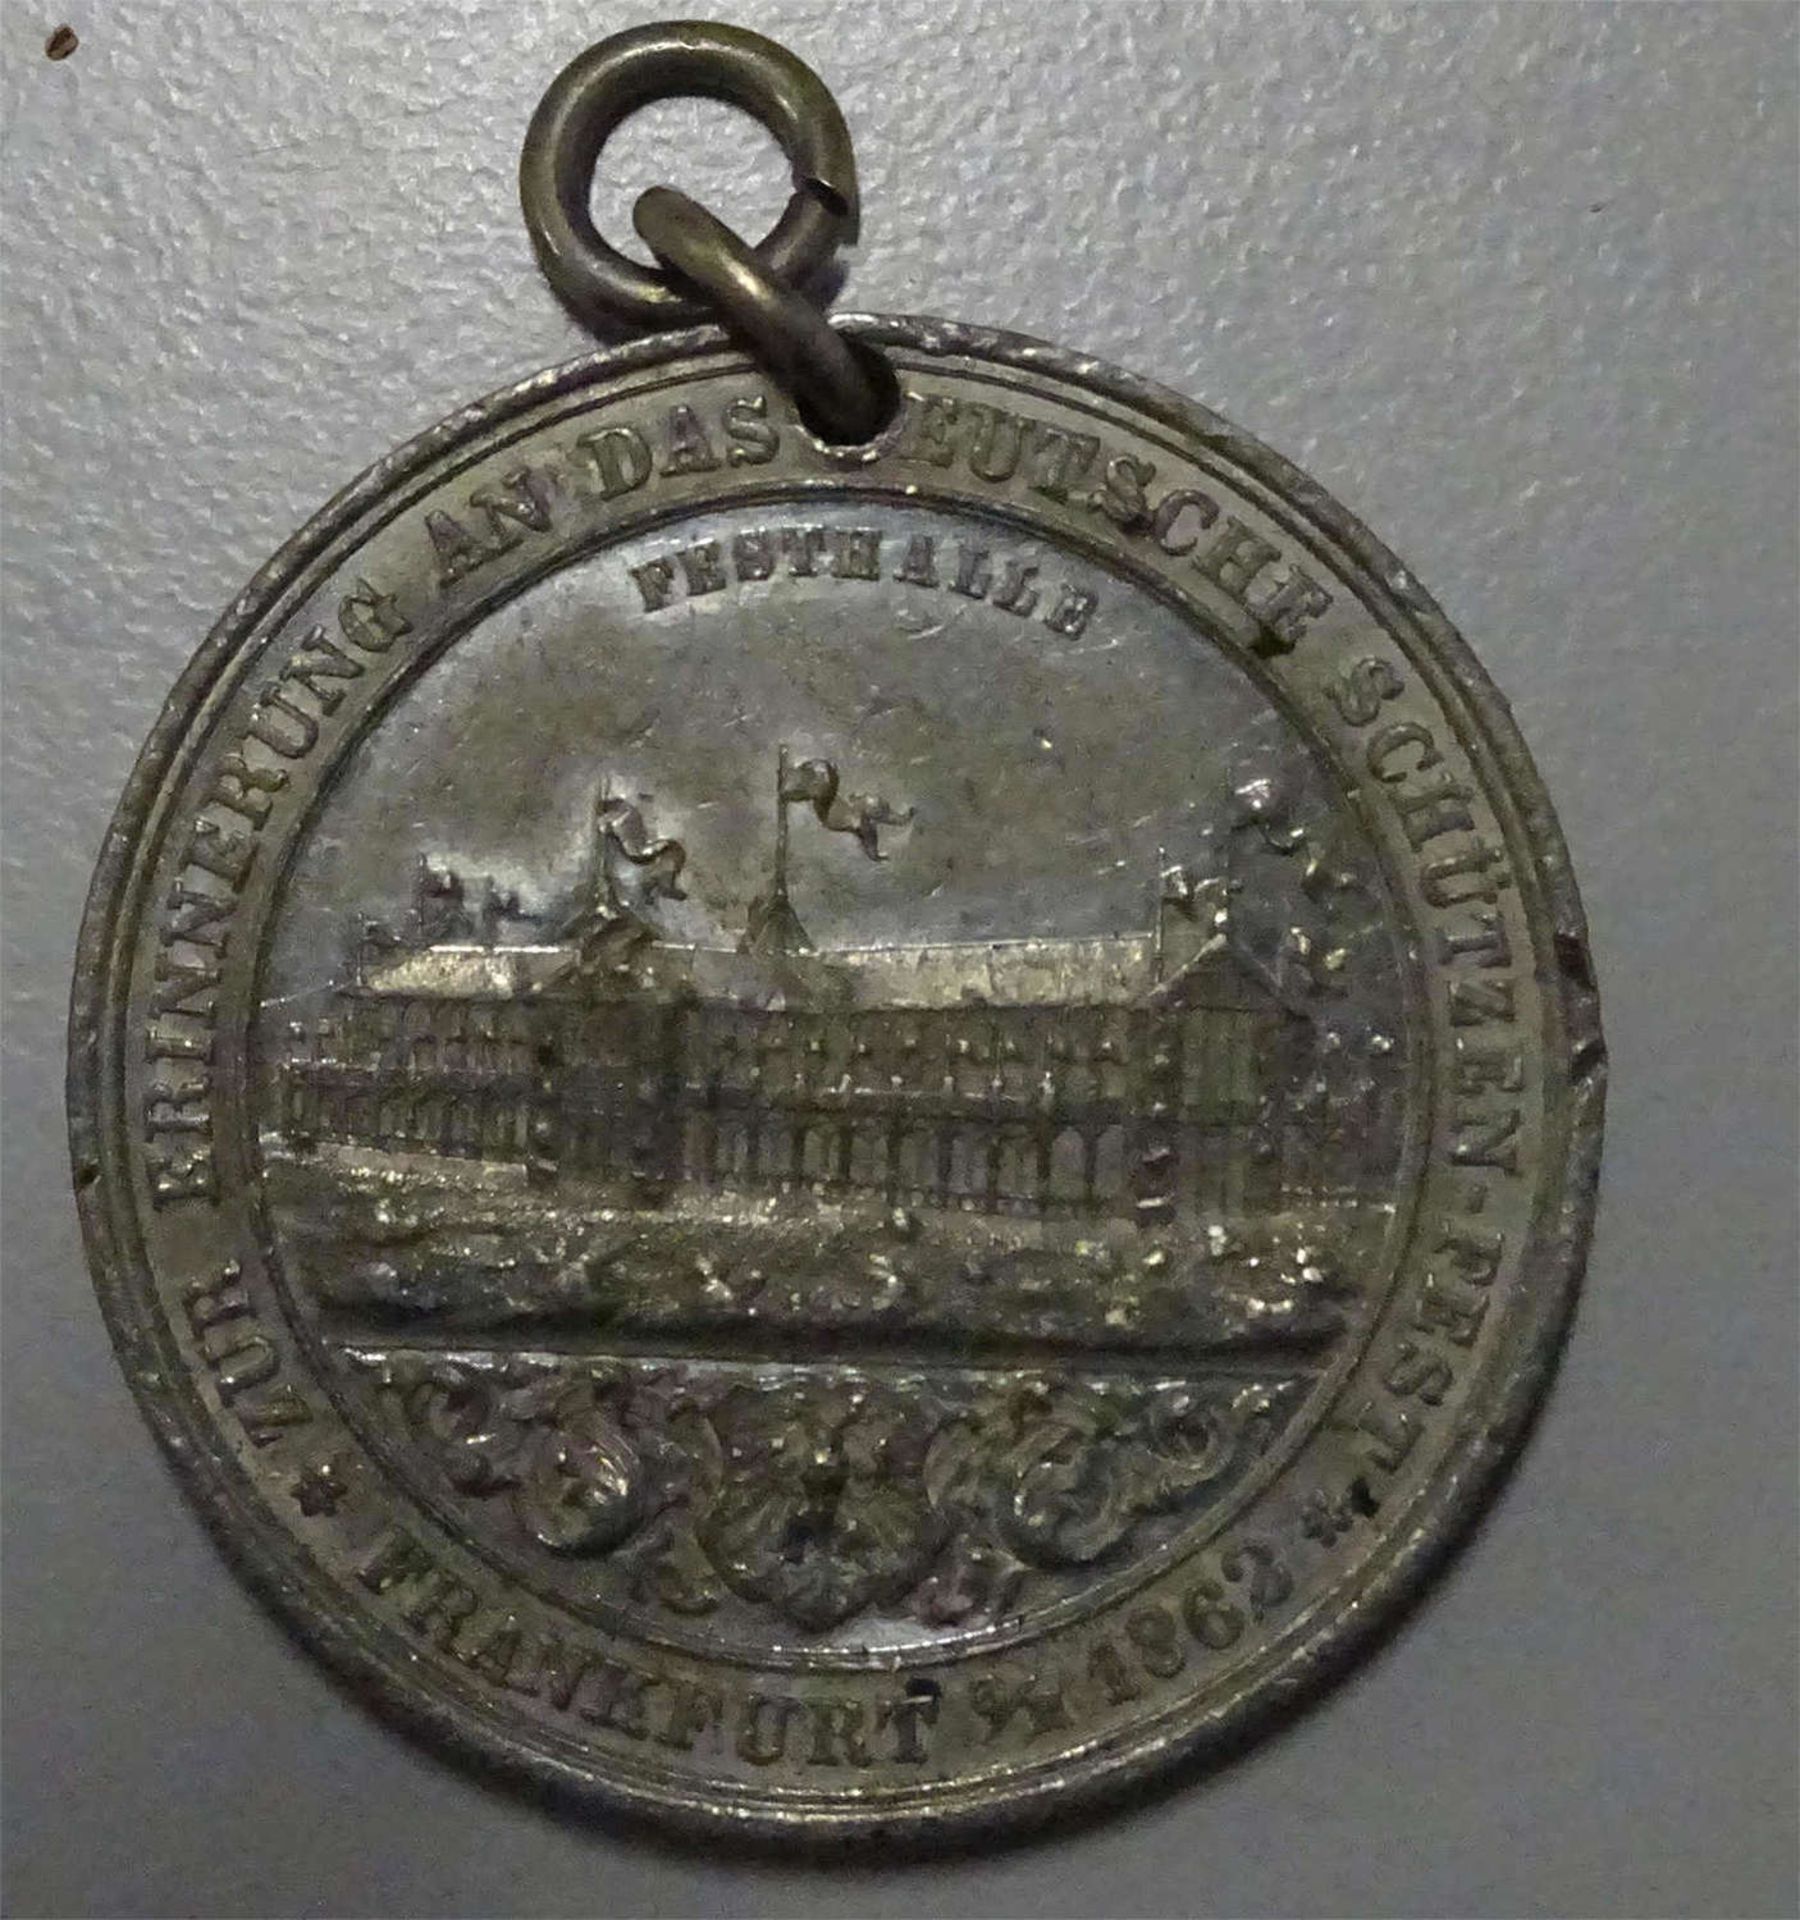 Schützenmedaille Frankfurt 1862, gehenkelt, sonst guter Zustand.Rifle medal Frankfurt 1862, - Image 2 of 2